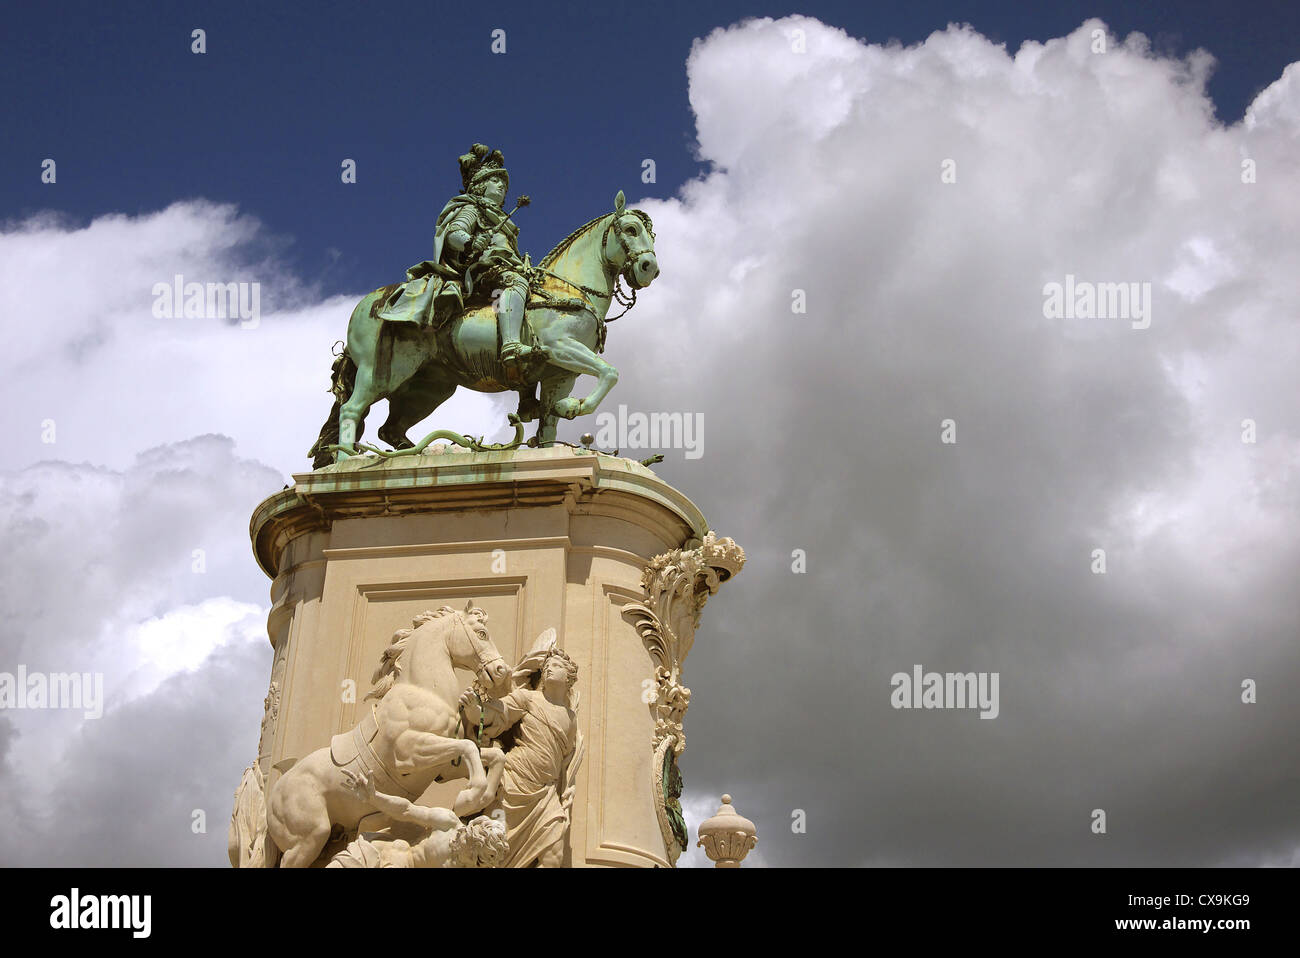 Statue du Roi Joseph I dans le Prace do Commercio à Lisbonne, Portugal. Banque D'Images